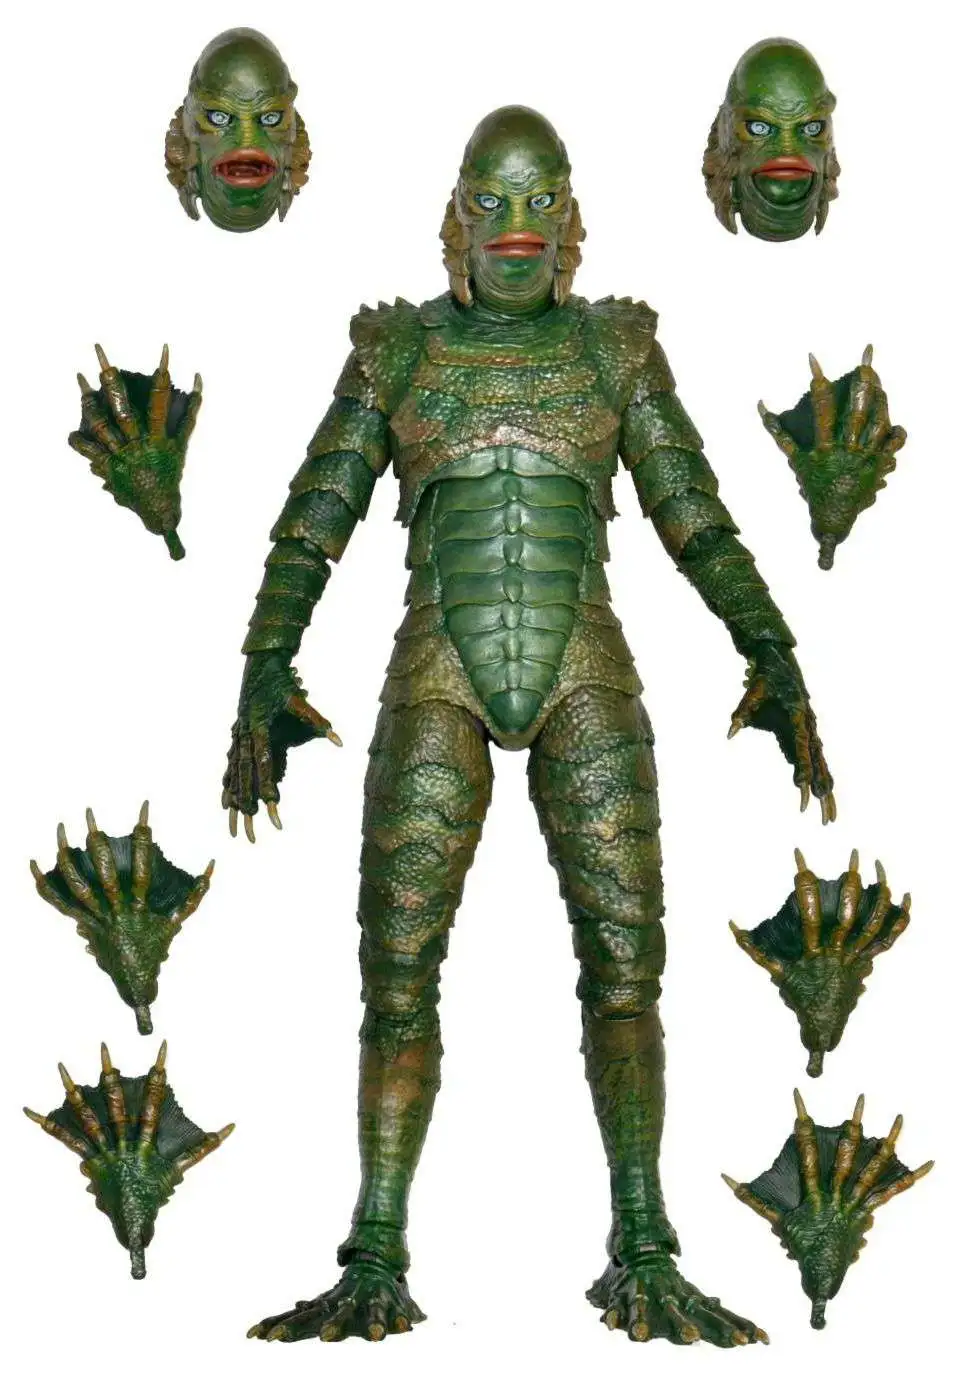  Aliens Vs Predator Deluxe Predator Costume, Black, Standard  Size : Toys & Games